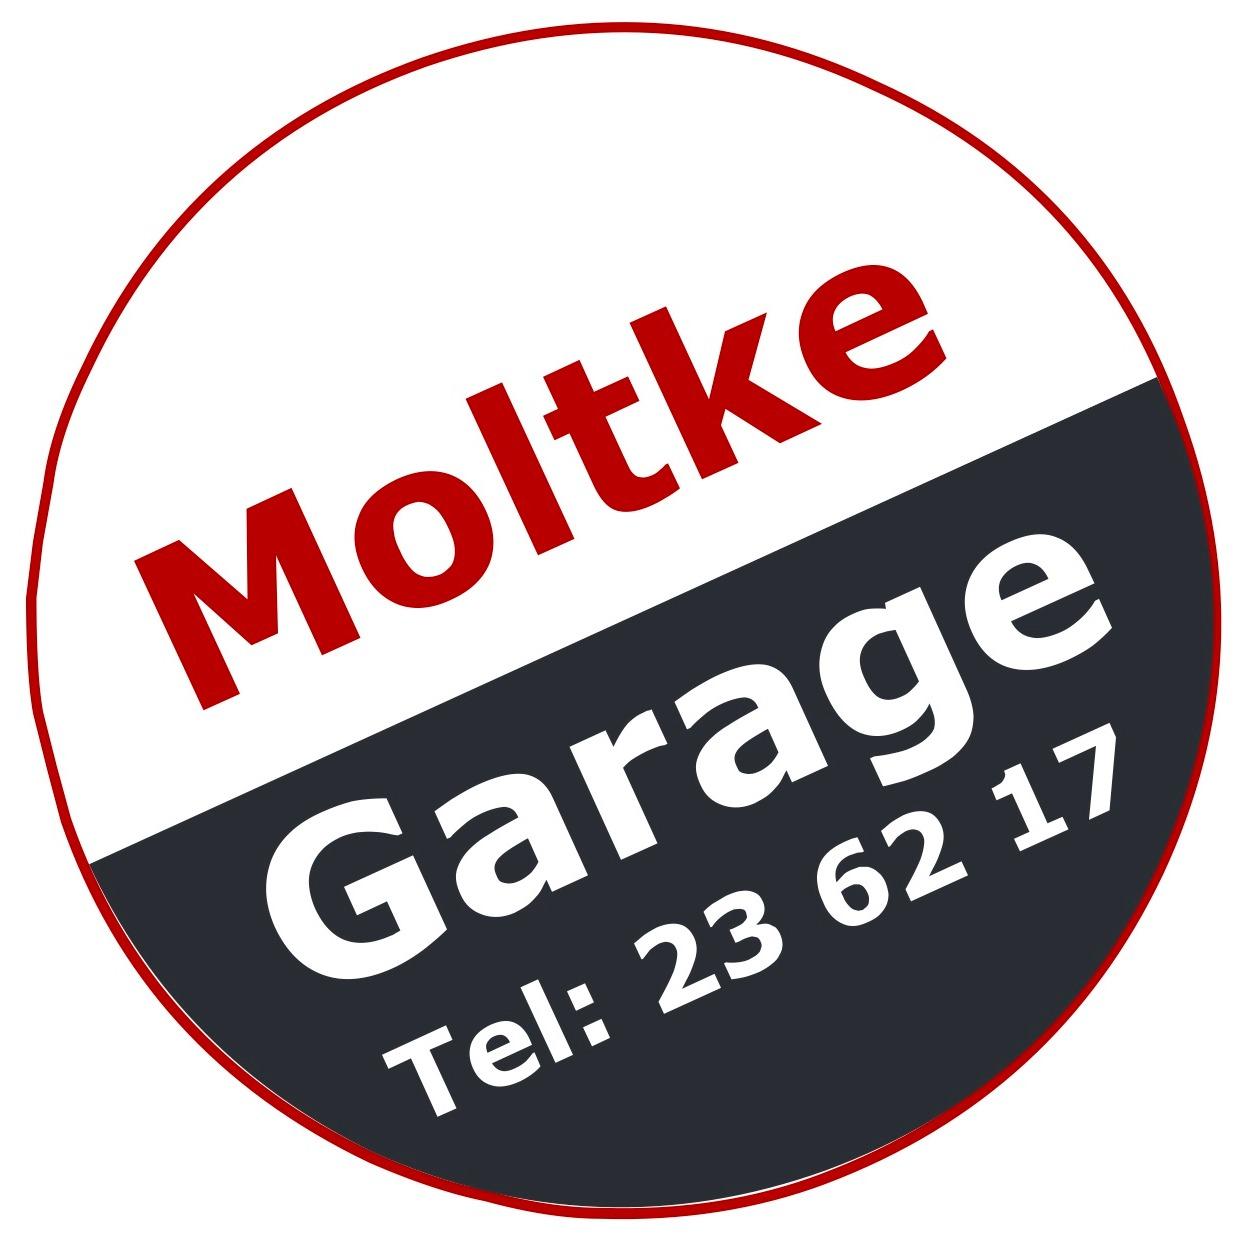 Moltke Garage - Mehrmarken Werkstatt in Köln